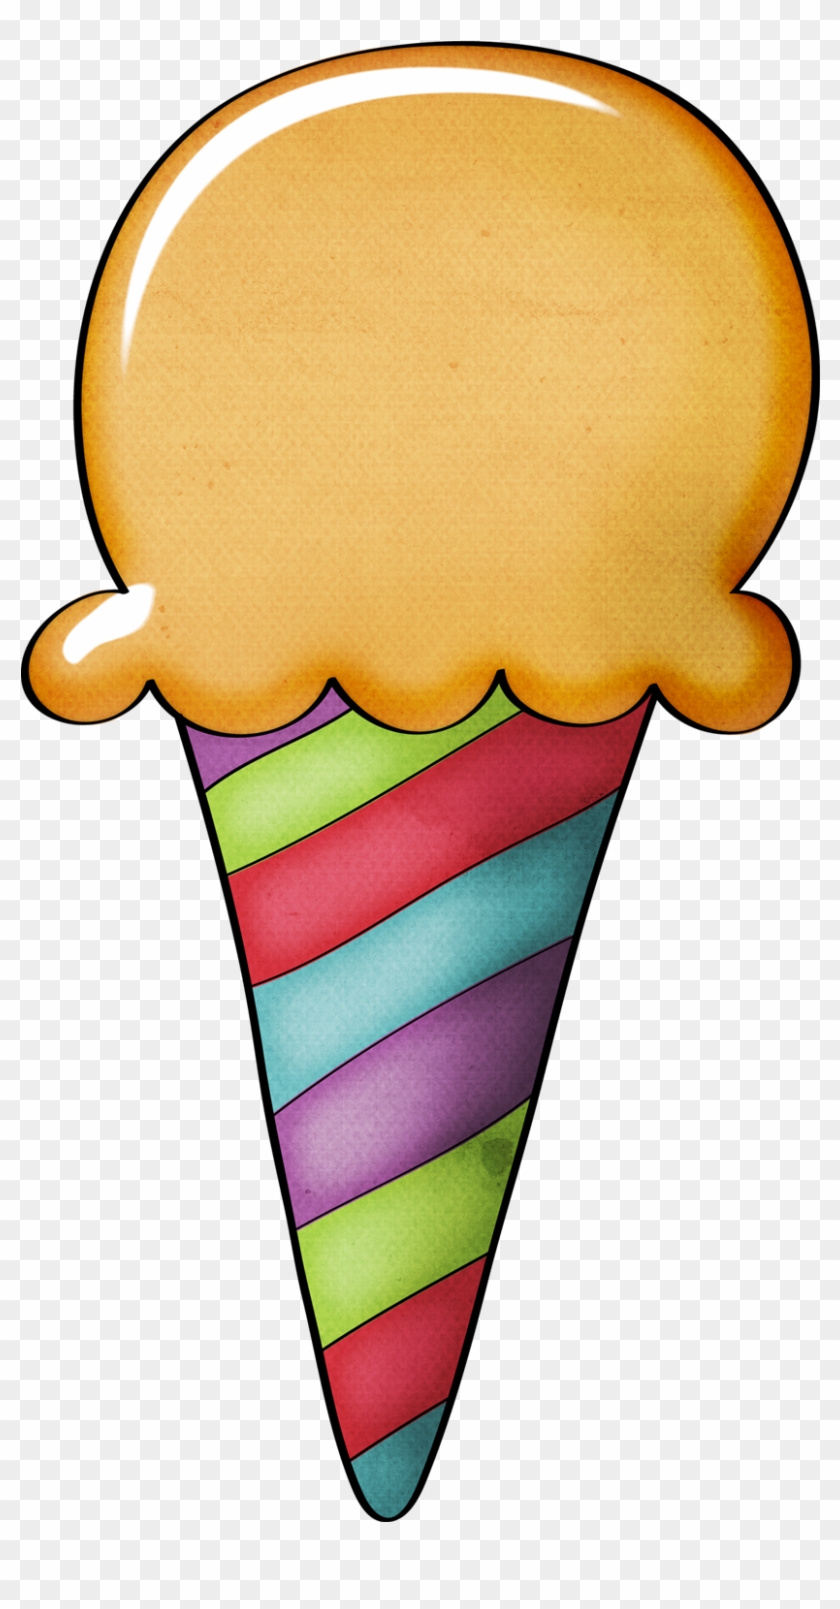 Ice Cream Cone Clip Art - No Background Ice Crean #87769